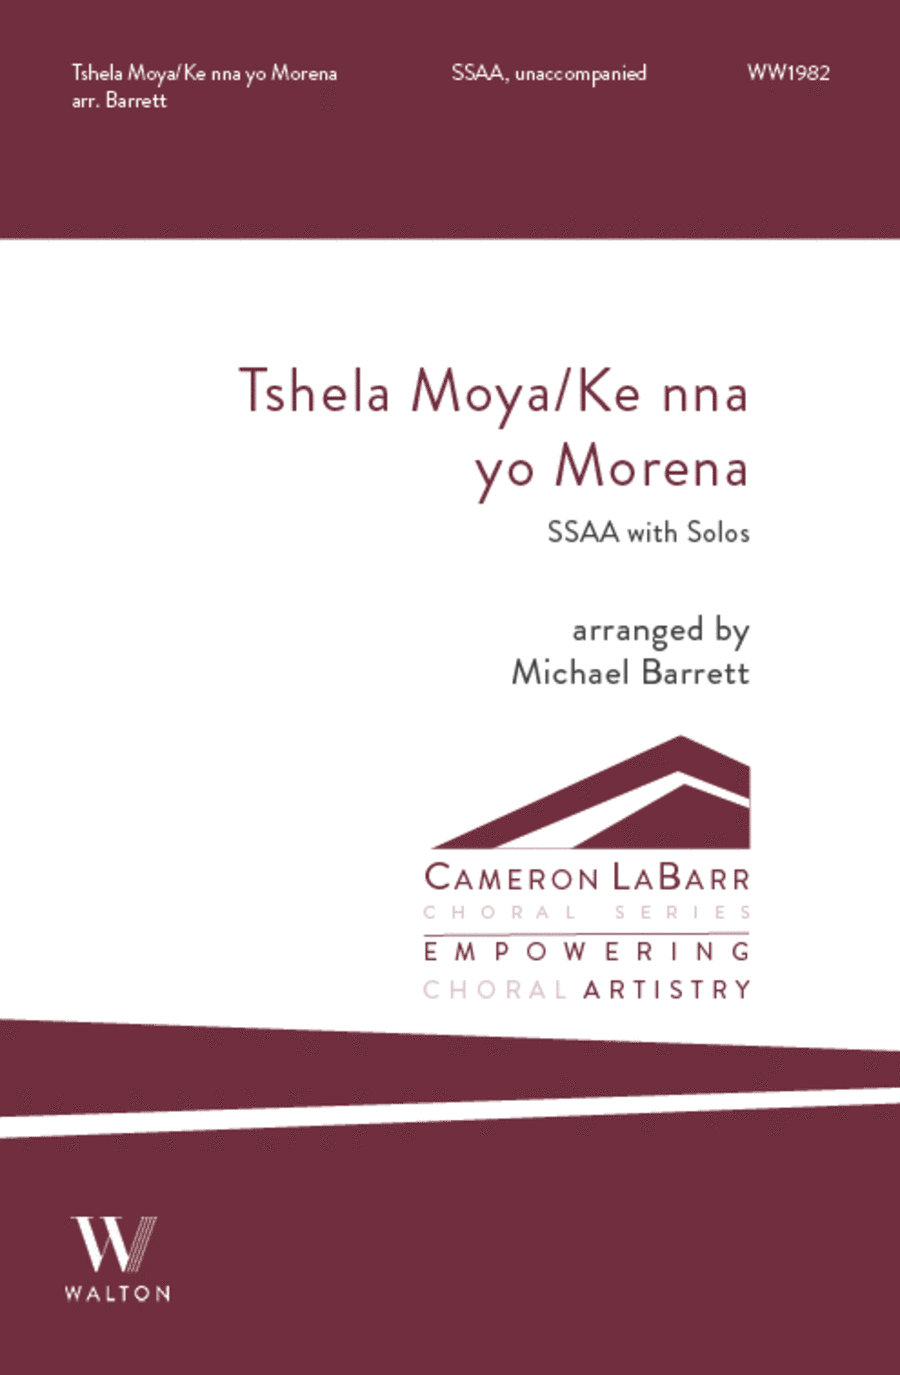 Tshela Moya/Ke nna yo Morena (SSAA)